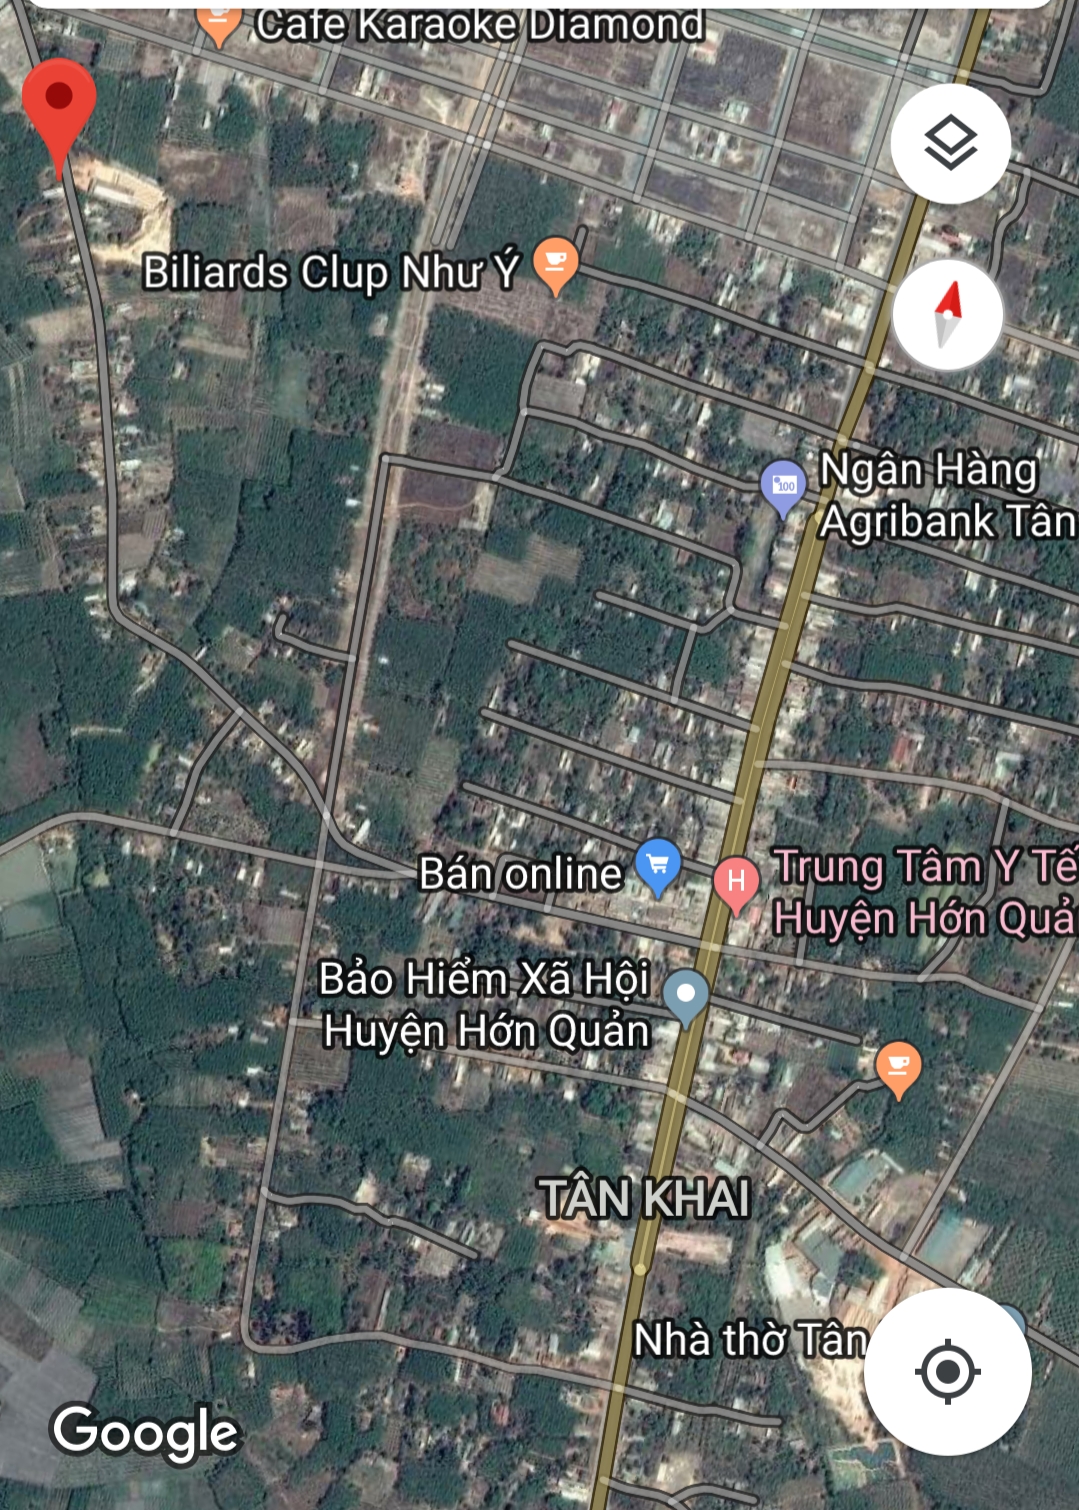 Đất thị trấn tân khai huyện Hớn quản tỉnh Bình Phước - Tung Ta ...